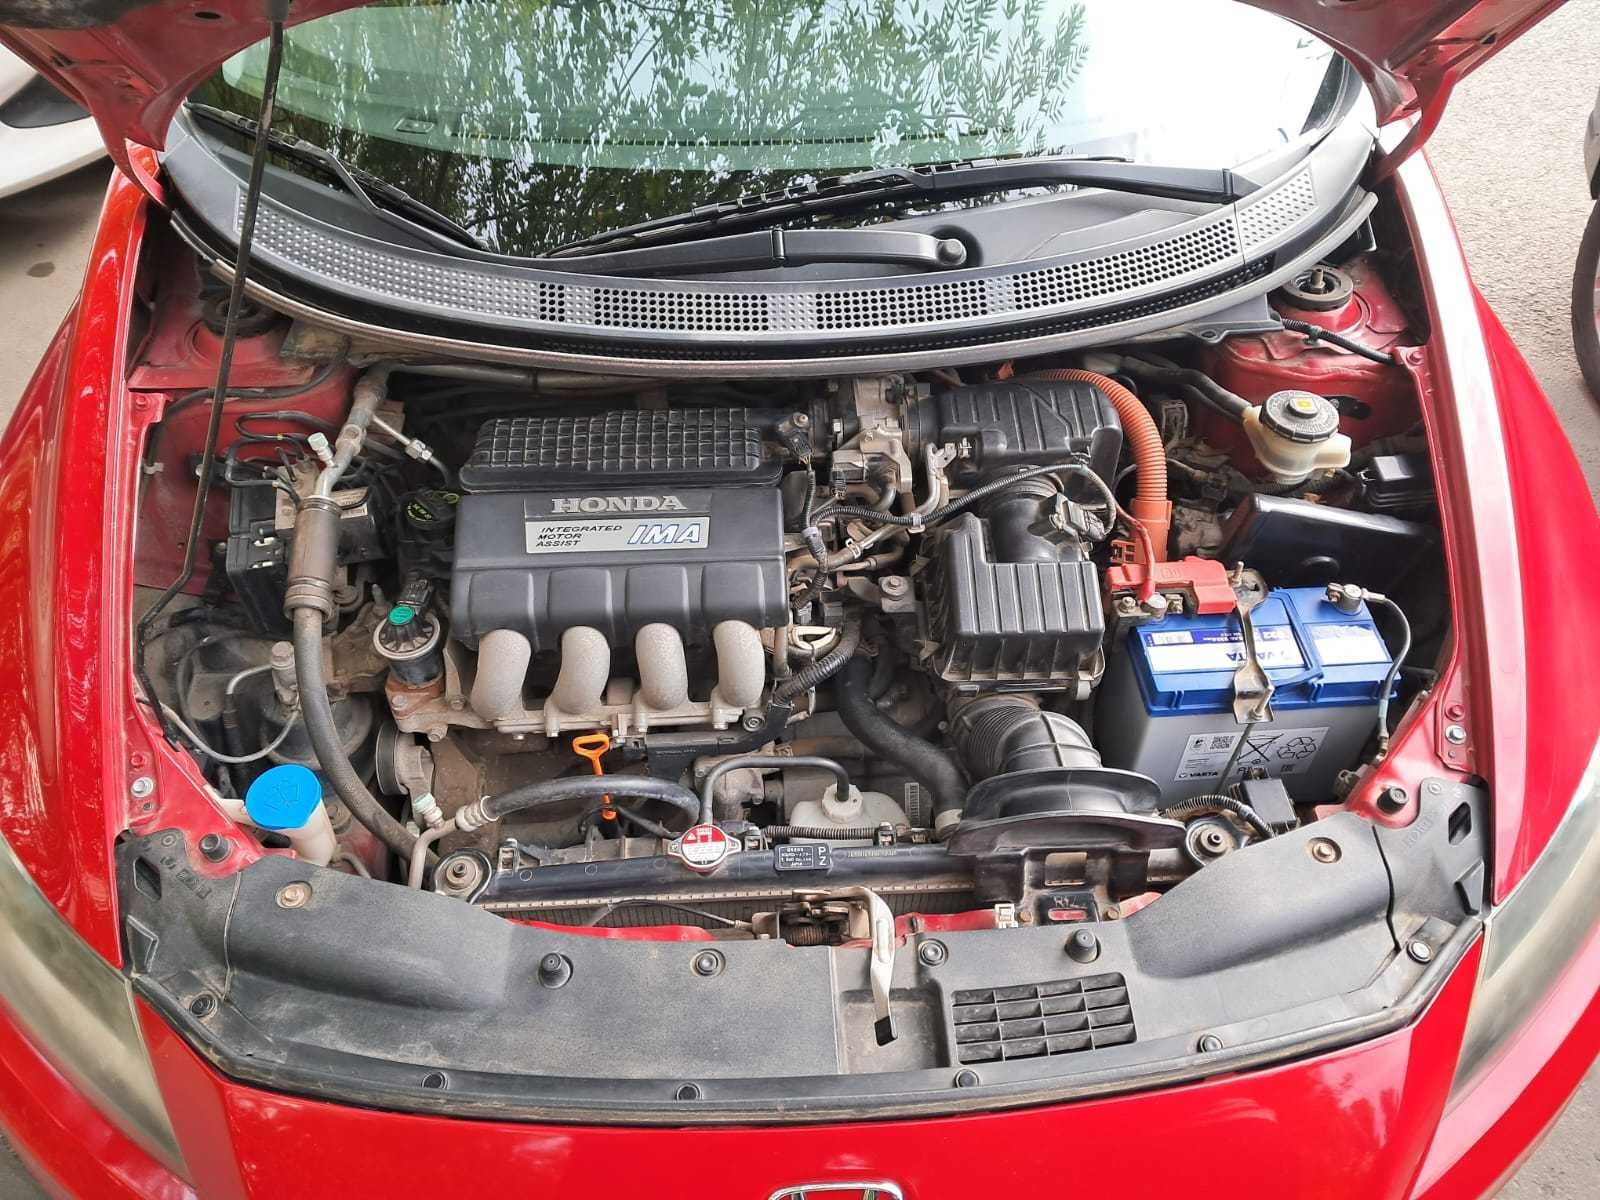 Honda CR-Z, 1.5 Hibrid, Automata, 2015, 130CP